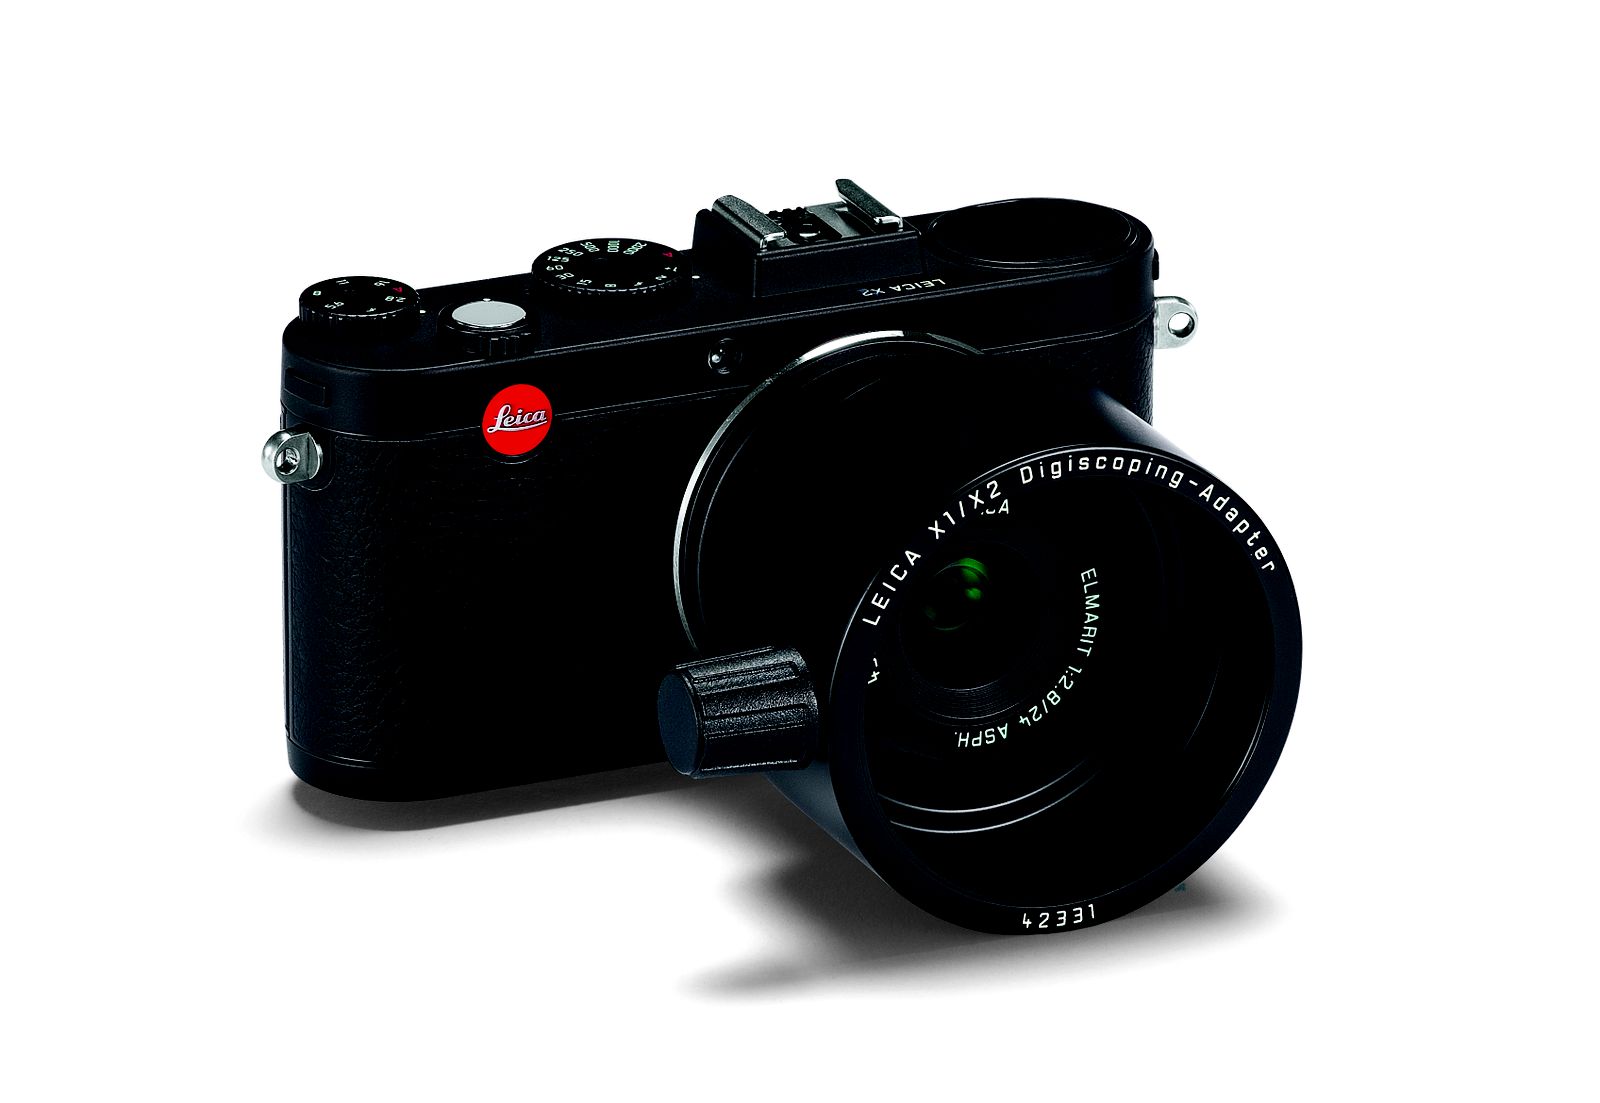 Kommentér Articulation Kollega The new Leica X2 digiscoping adapter - Leica Rumors